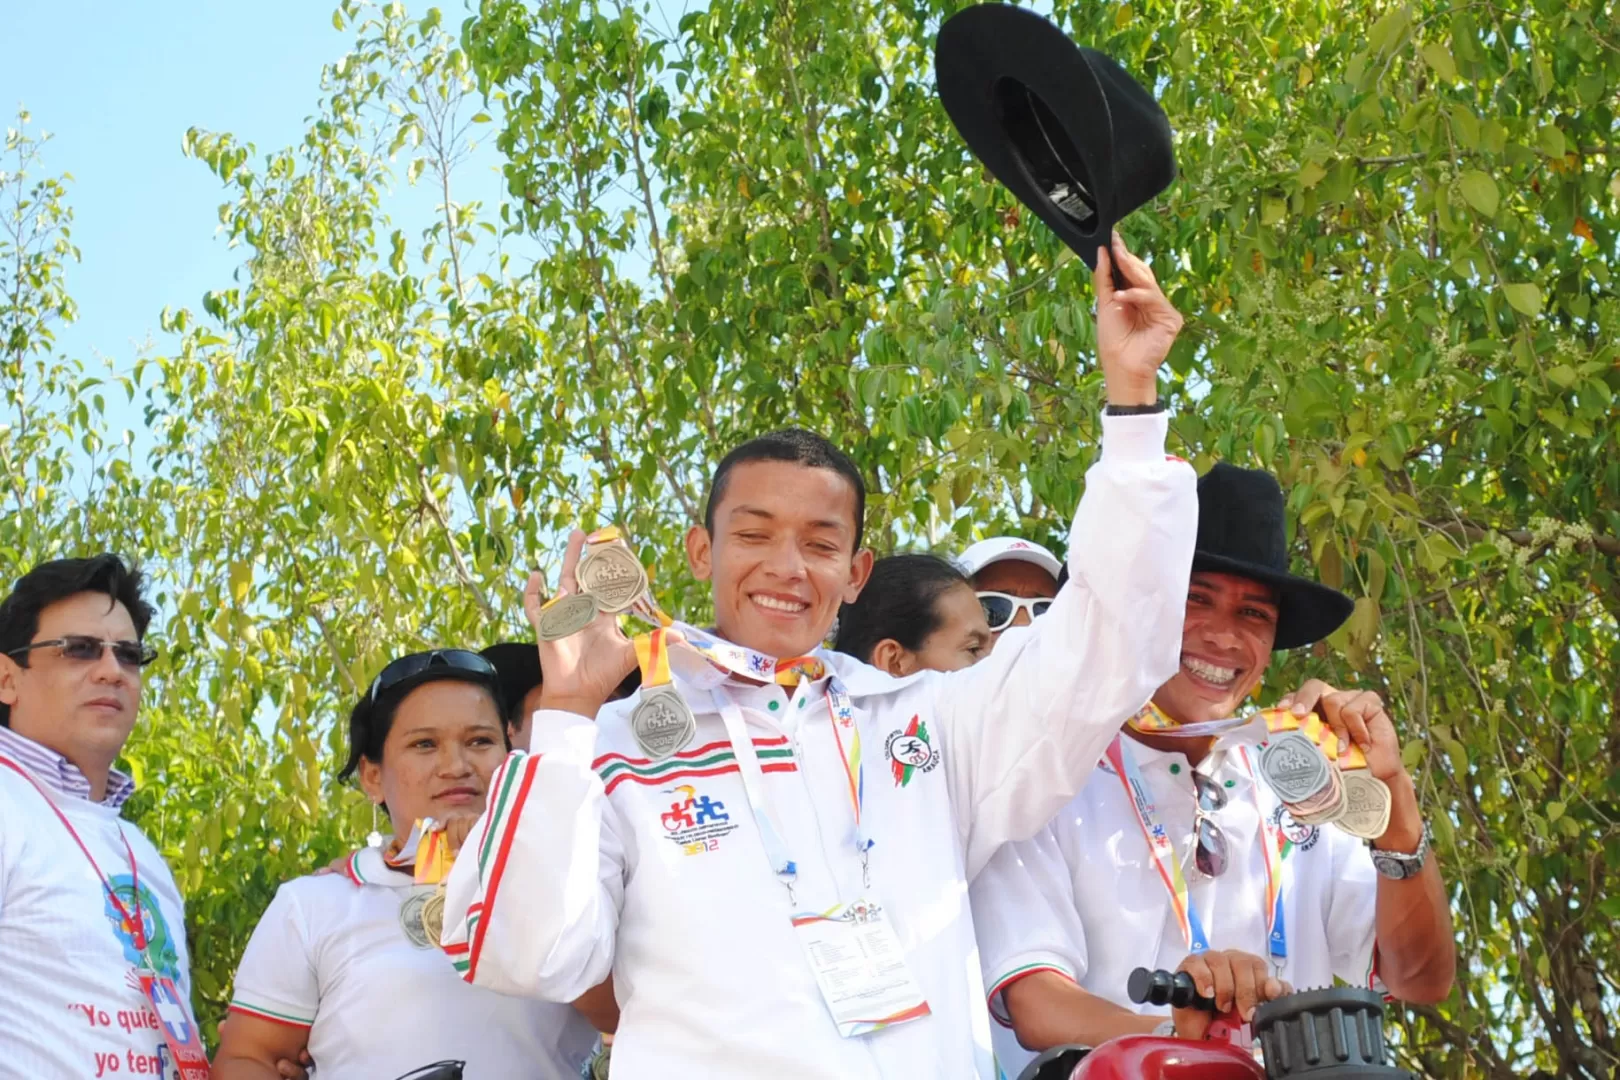 Atletas araucanos ganaron medallas para Colombia en en los Juegos Parasuramericanos 2014 realizados en Chile.